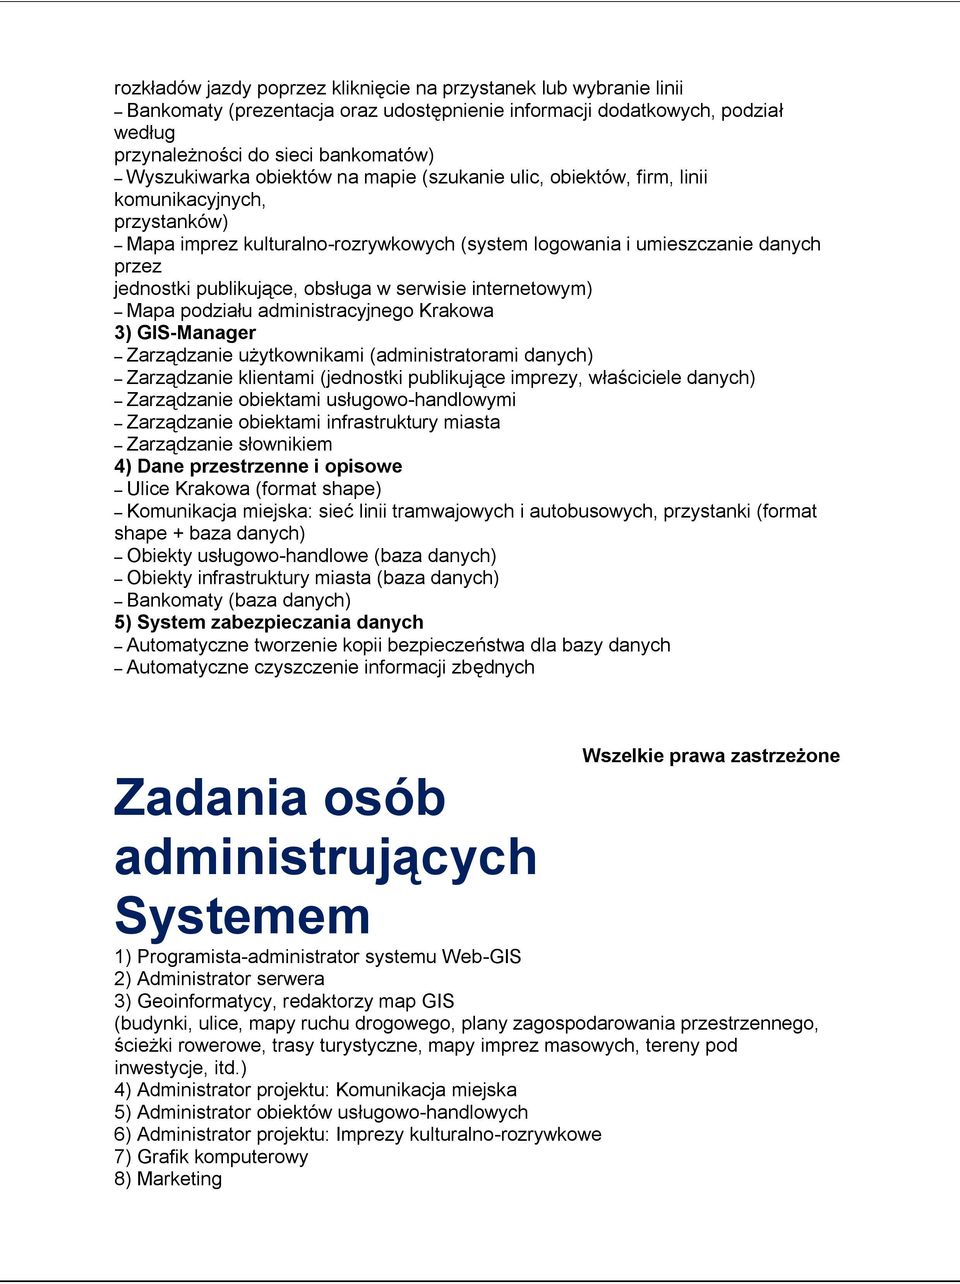 w serwisie internetowym) Mapa podziału administracyjnego Krakowa 3) GIS-Manager Zarządzanie użytkownikami (administratorami danych) Zarządzanie klientami (jednostki publikujące imprezy, właściciele